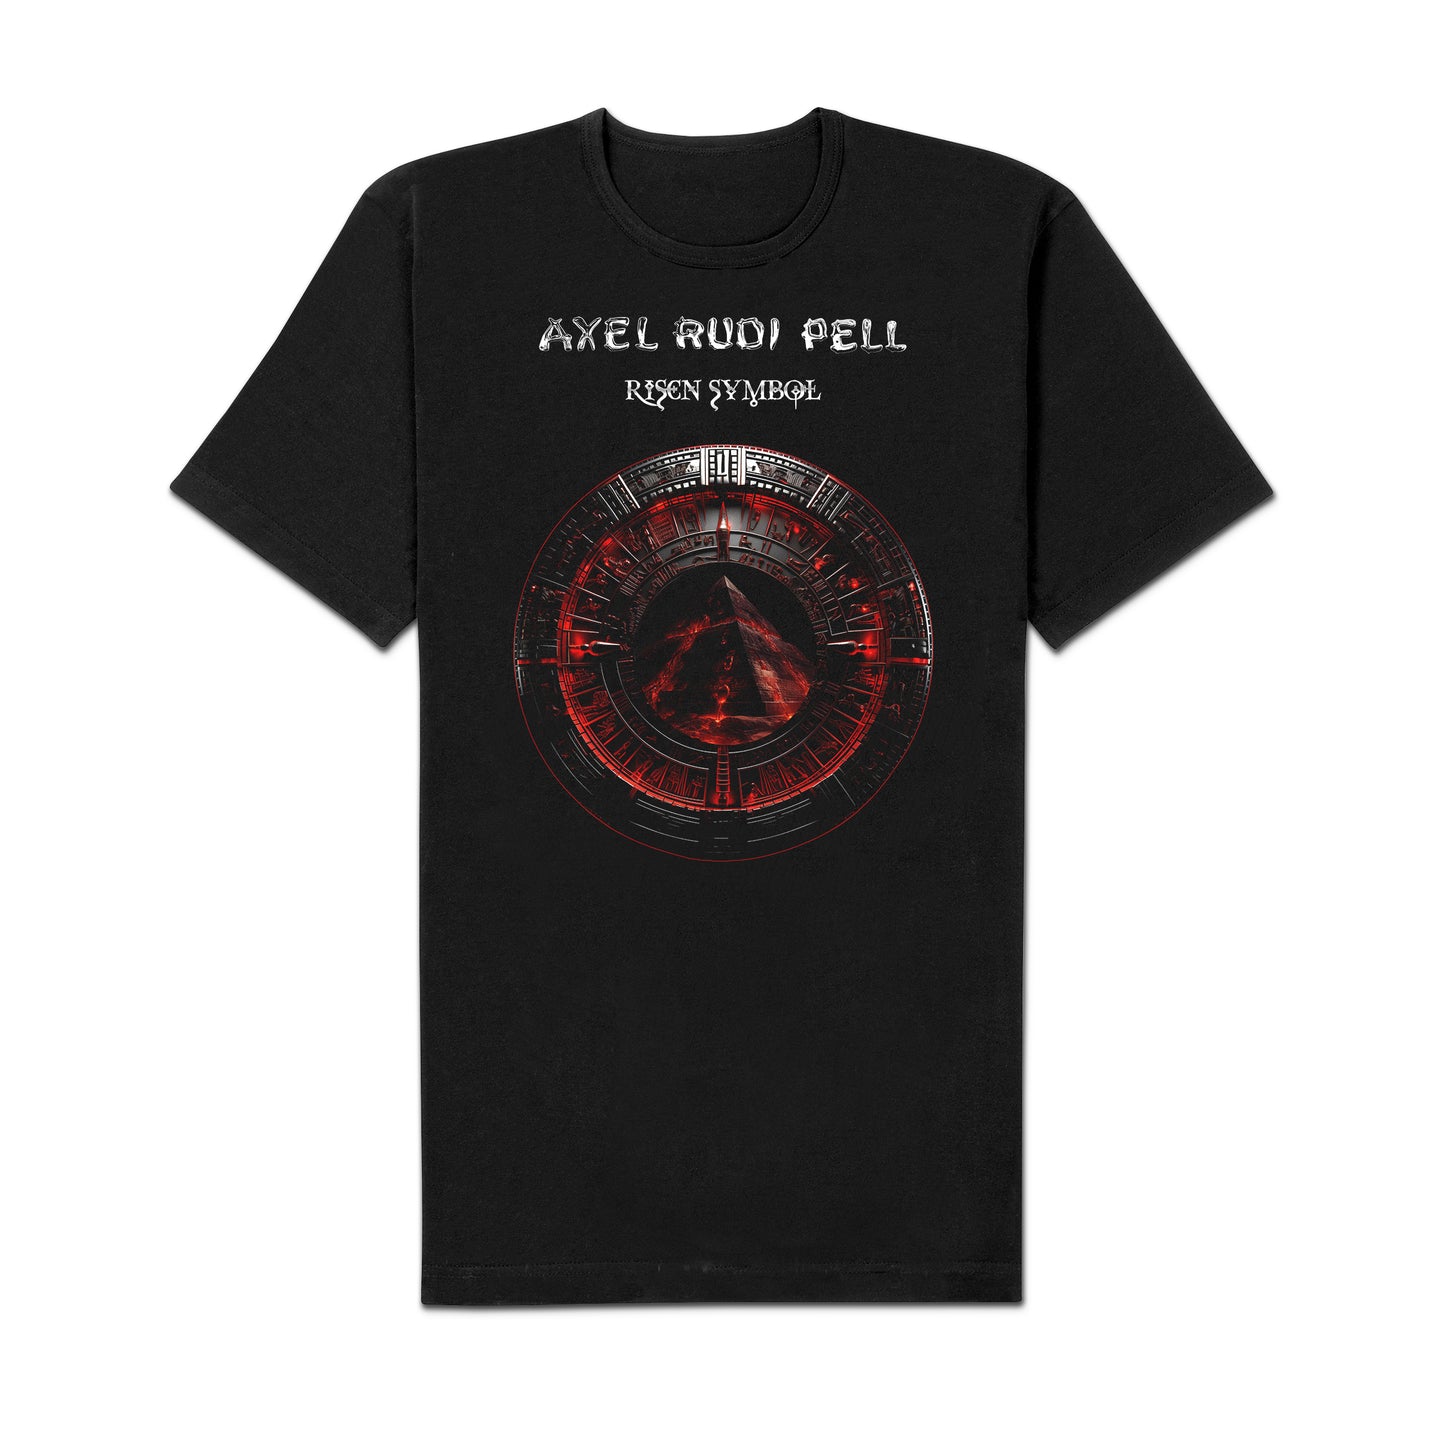 Axel Rudi Pell "Risen Symbol" LP-Bundle "Symbol"